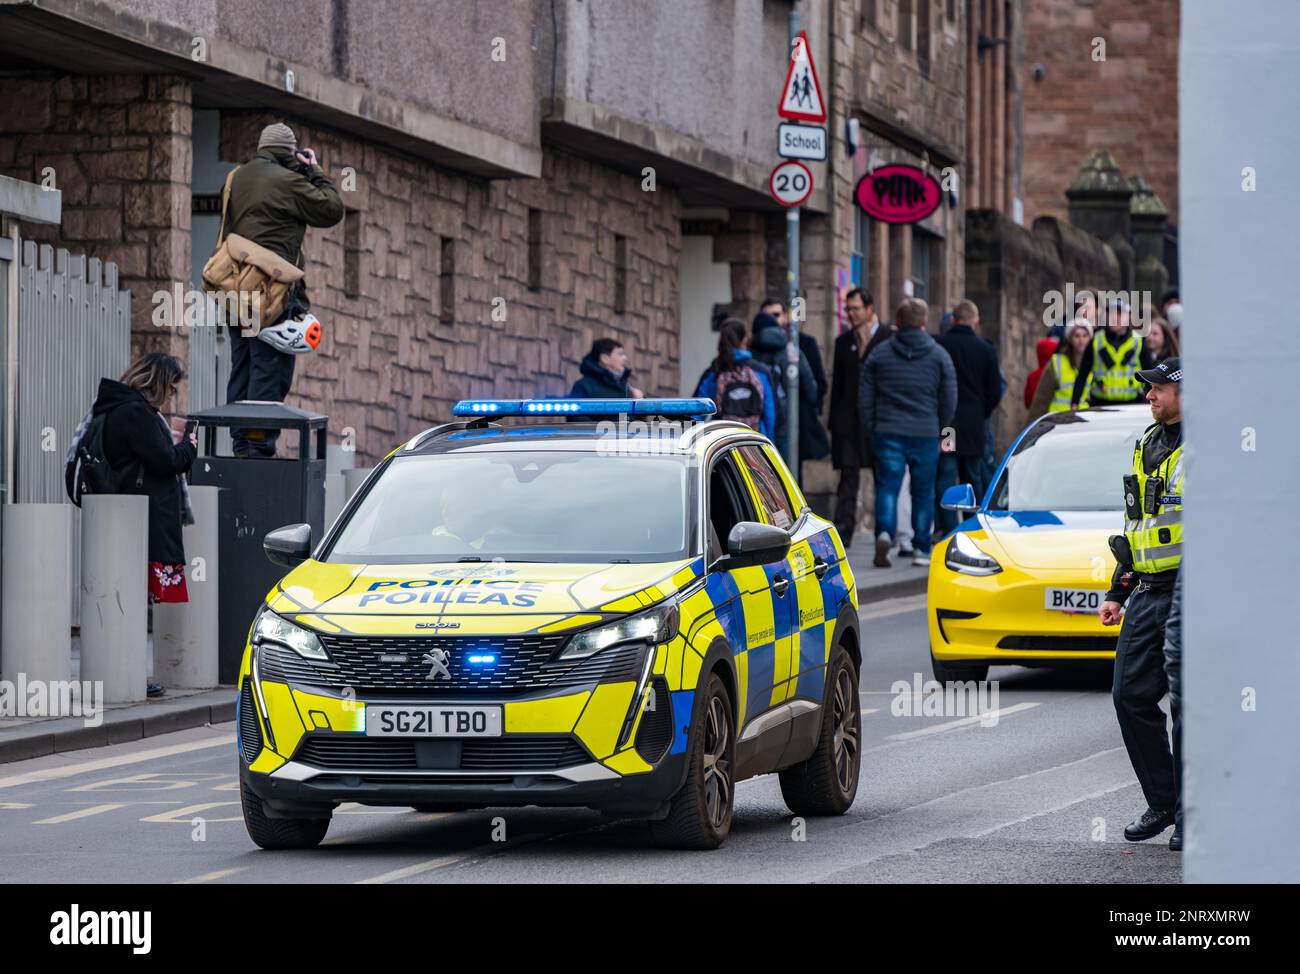 Photographe prenant la photo de mars sur Royal Mile avec voiture de police, Édimbourg, Écosse, Royaume-Uni Banque D'Images